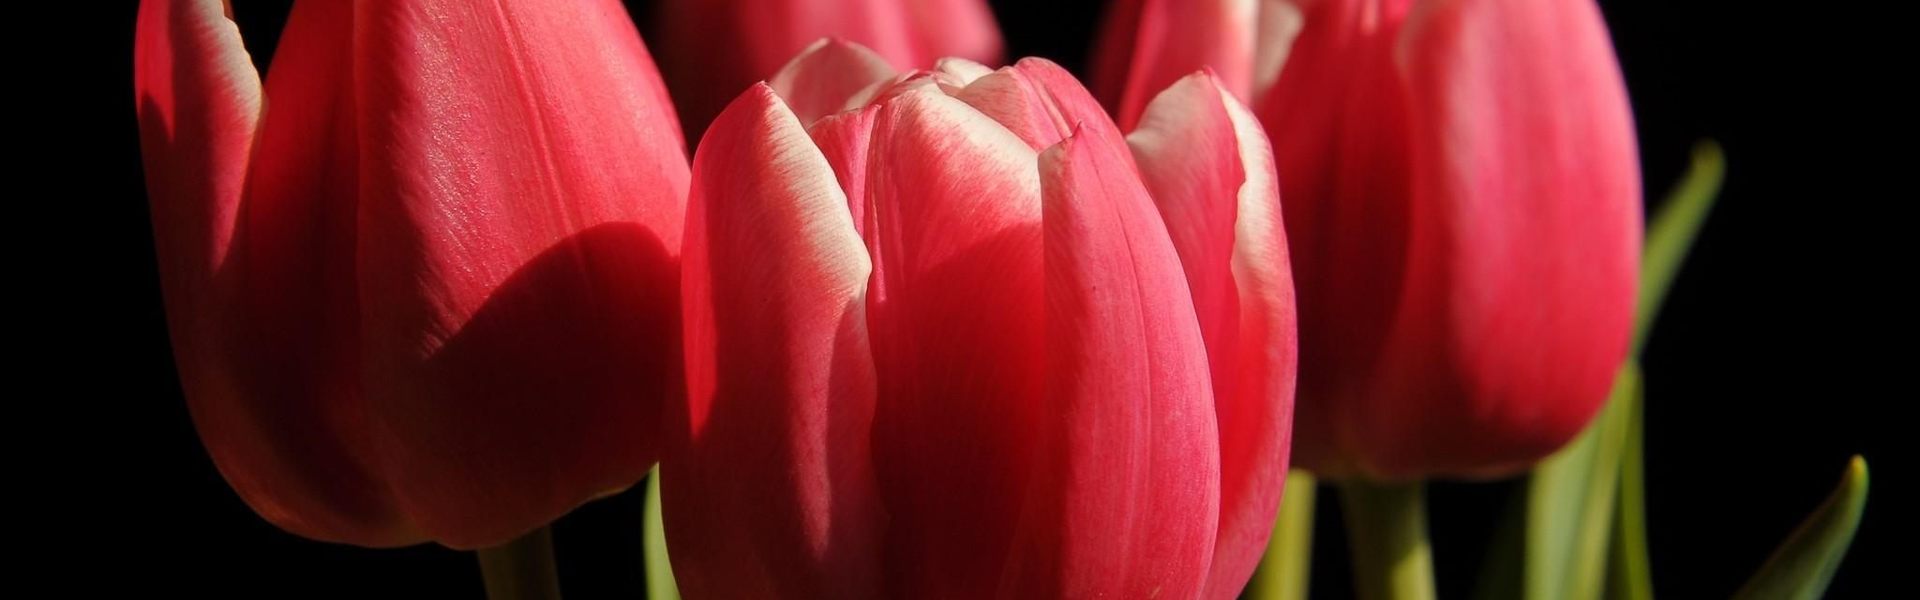 Wholesale tulip